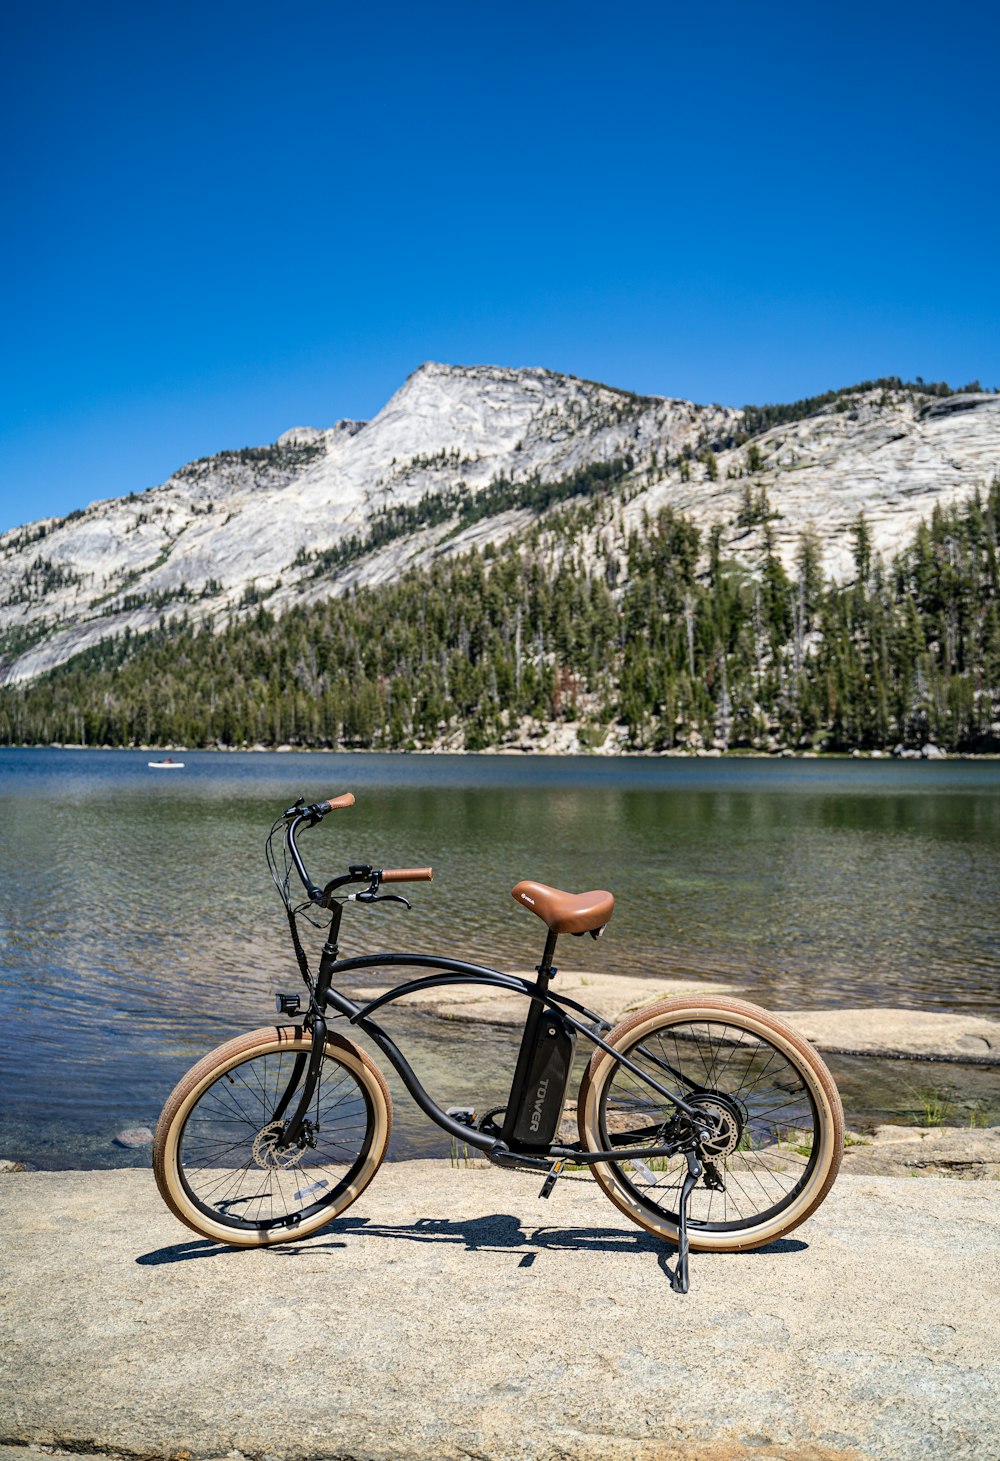 bicicleta negra en un muelle de madera marrón cerca del lago durante el día